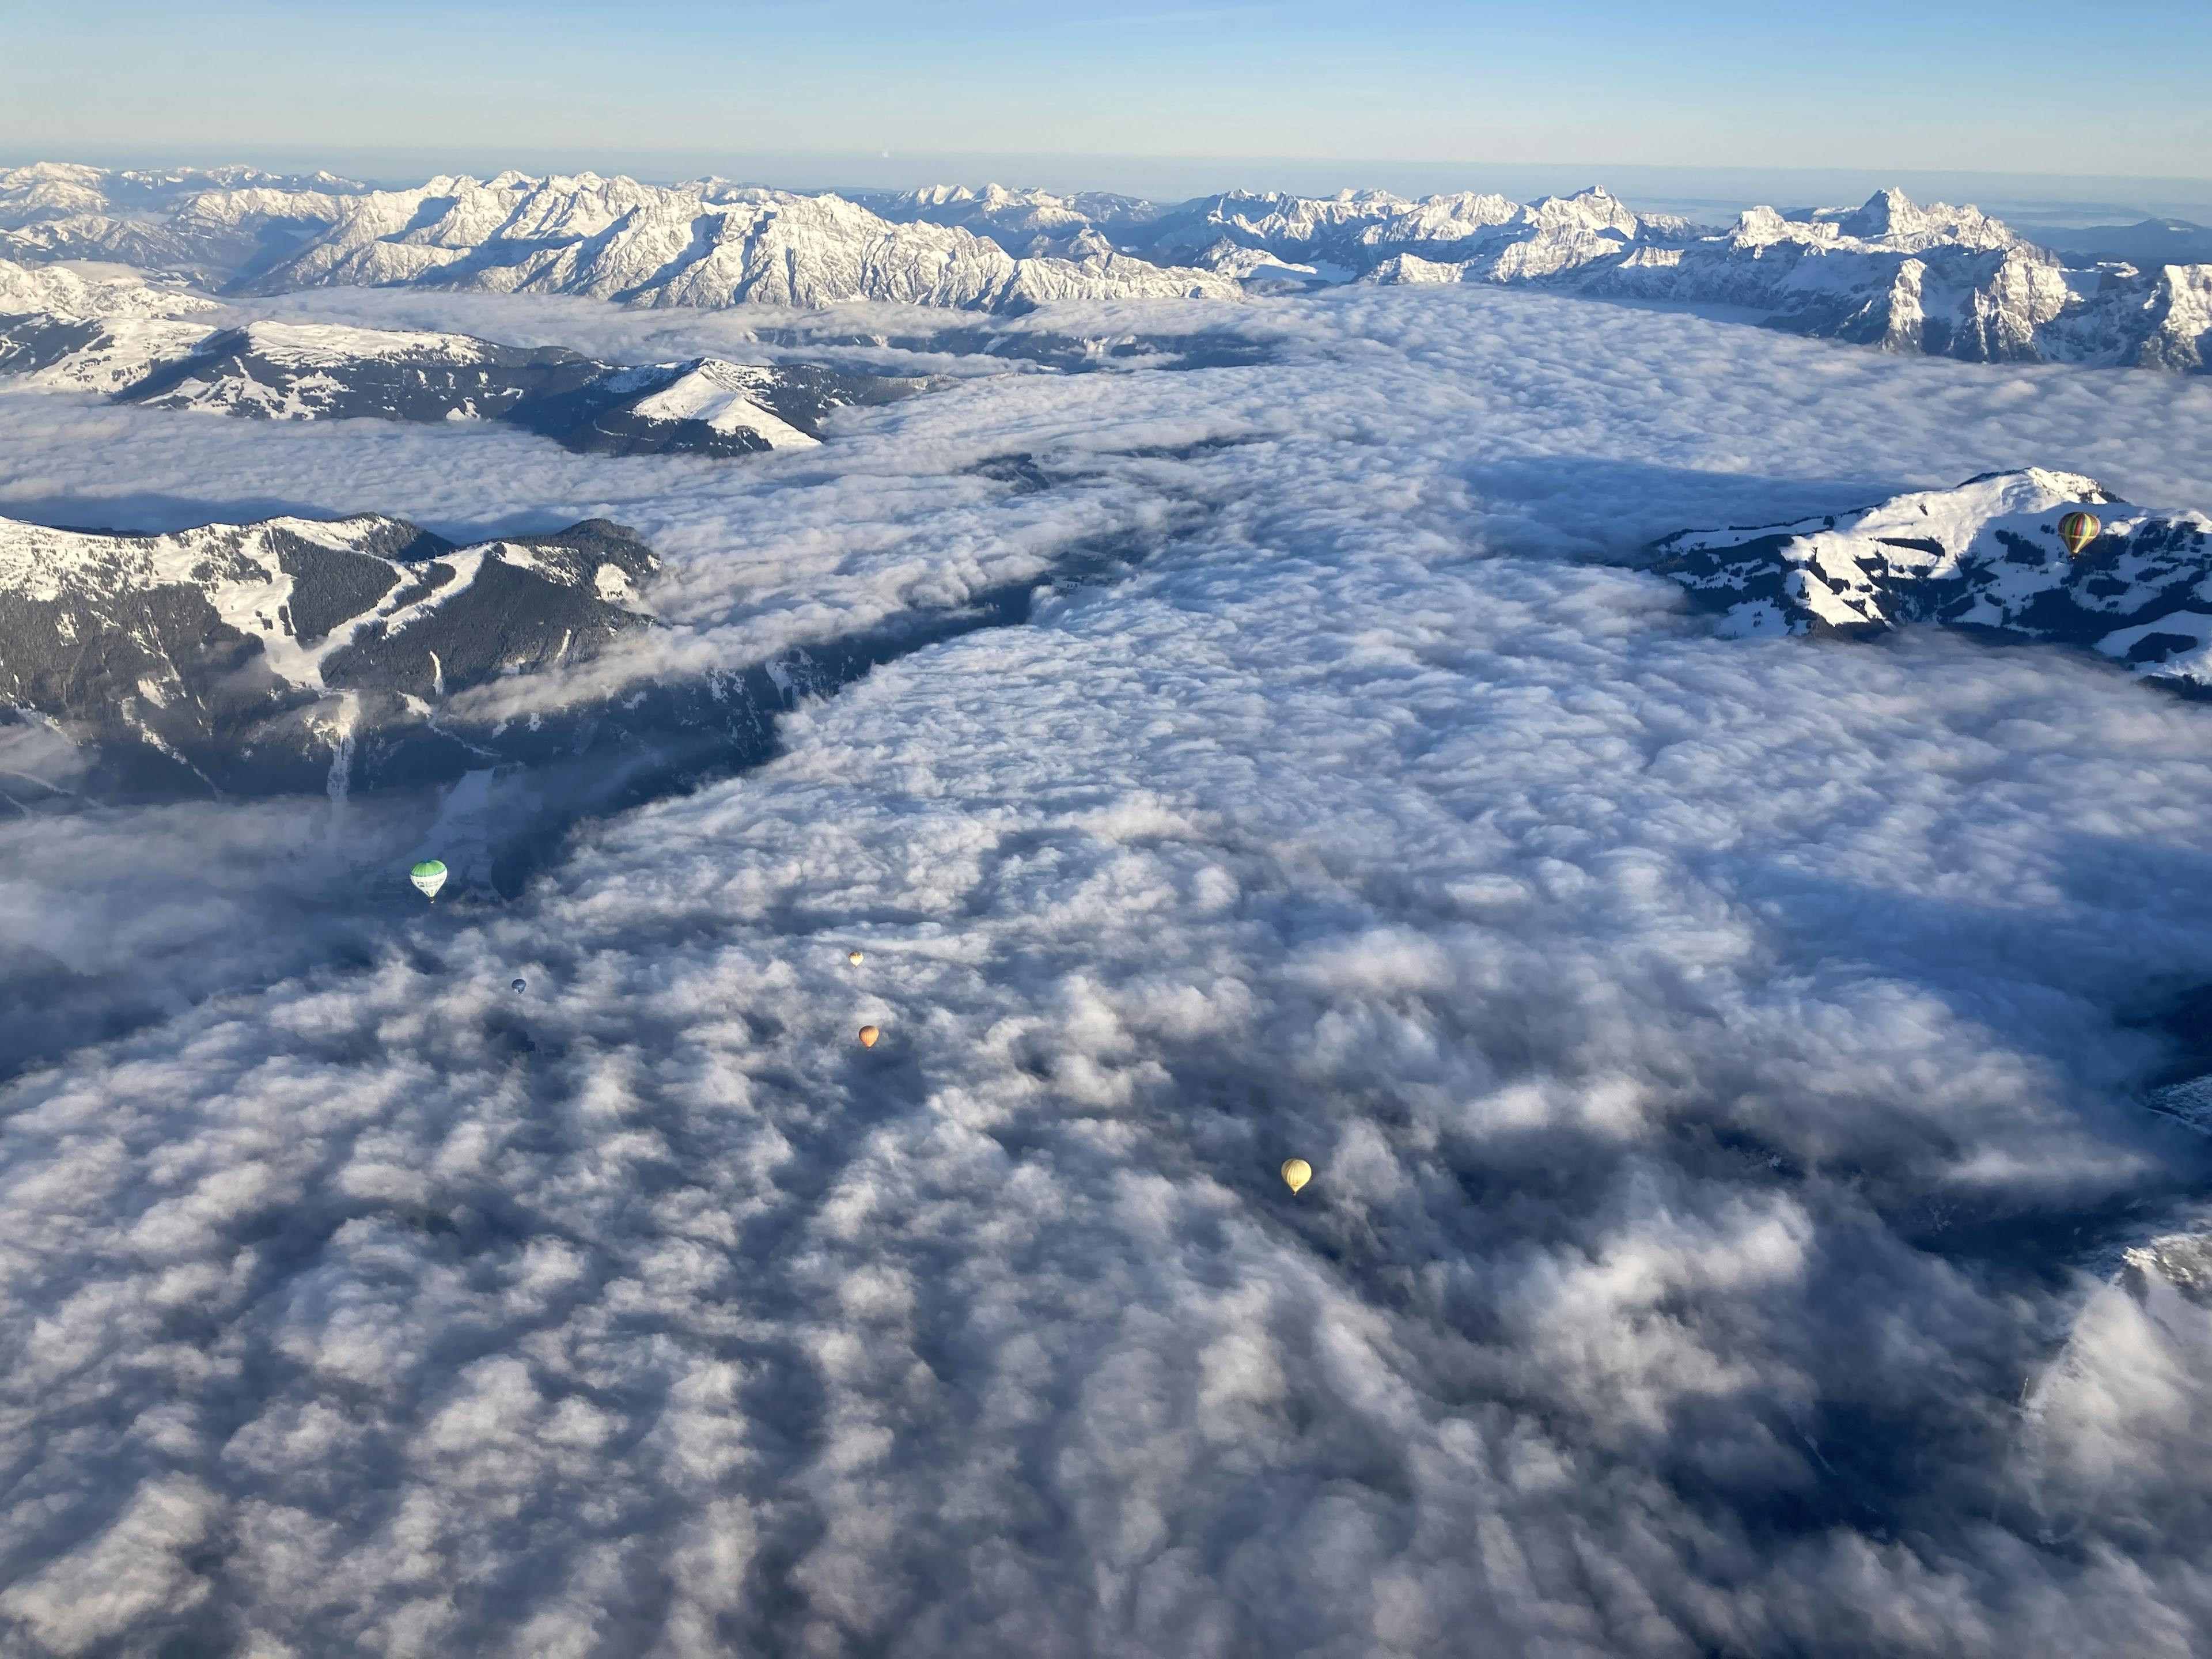 Winter Ballonfahrt in den österreichischen Bergen 